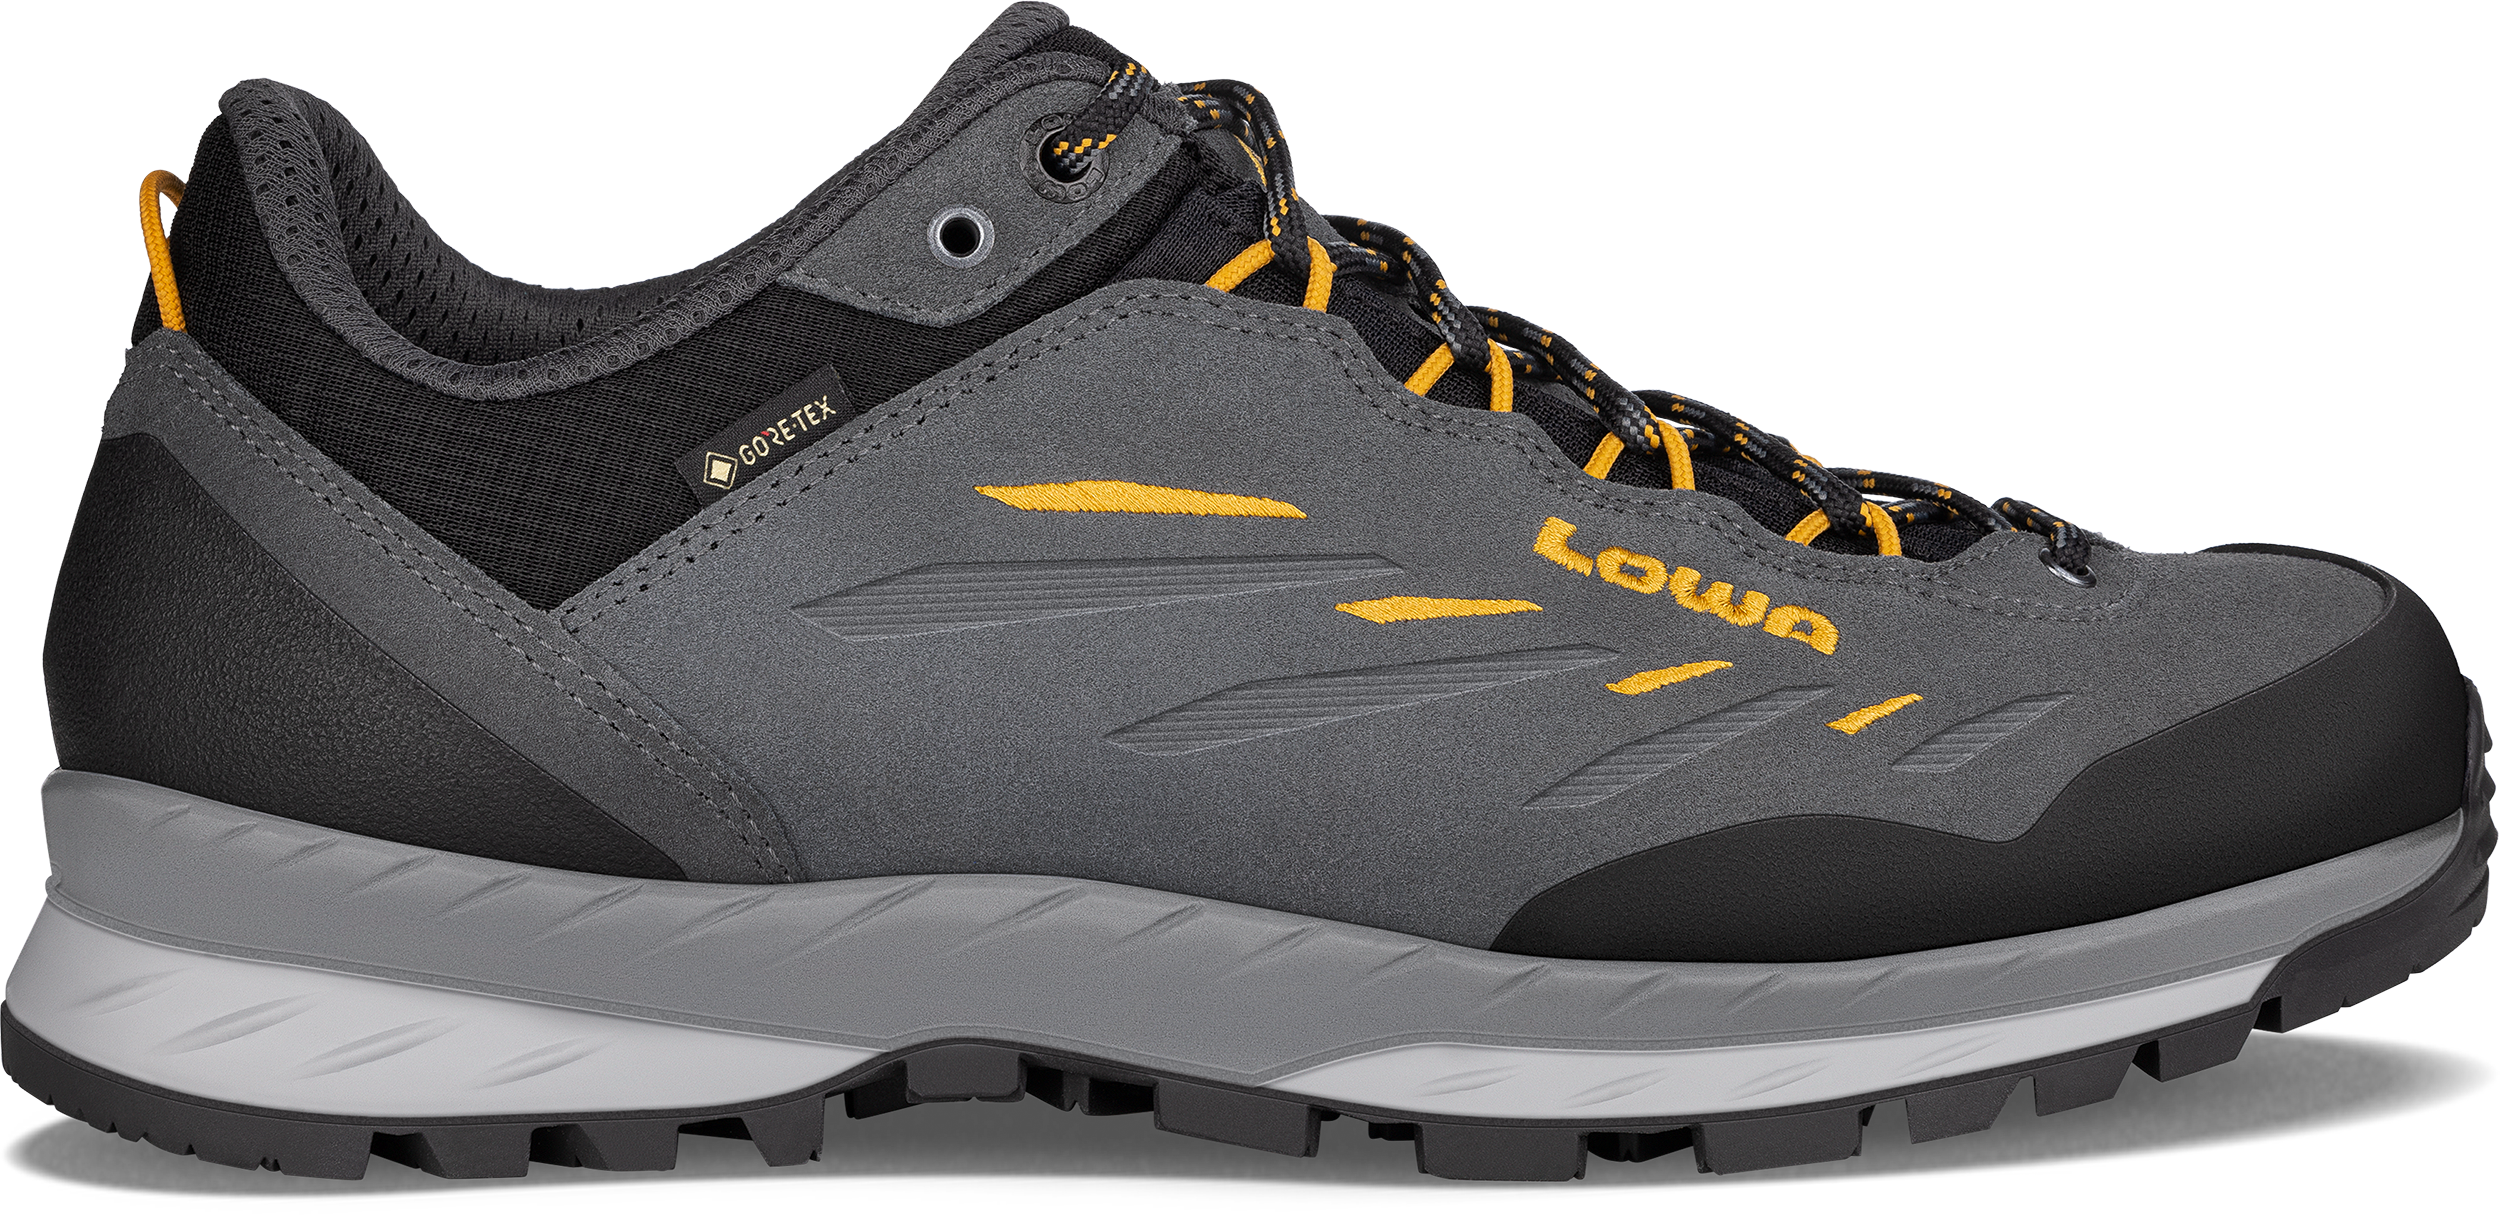 Verstrooien betekenis nek LOWA Outdoor Schuhe für Männer | LOWA DE